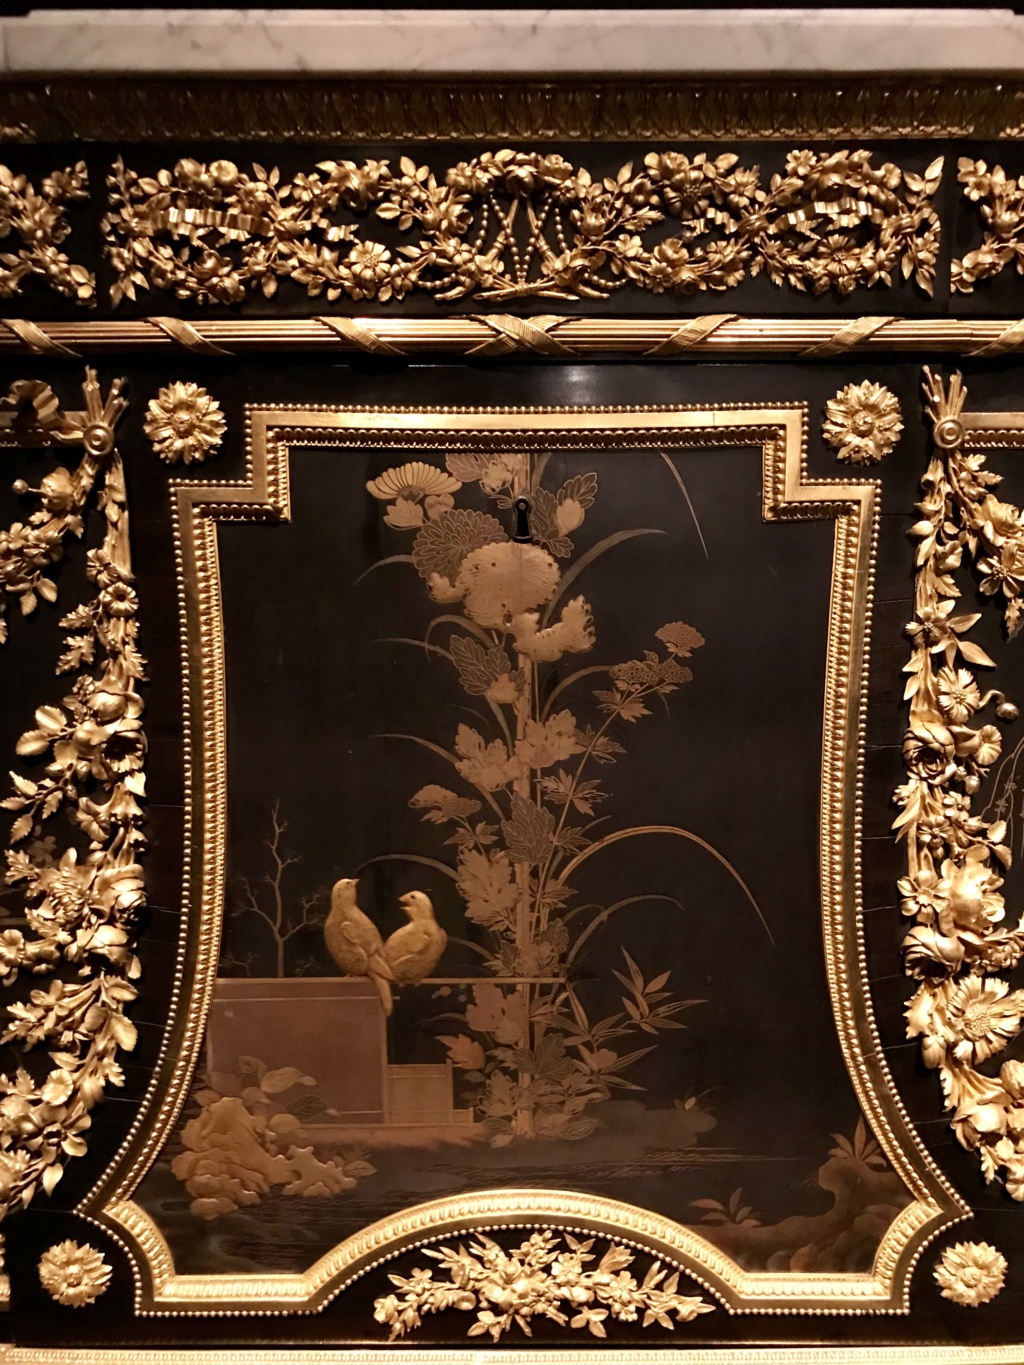 Le mobilier de Marie Antoinette au MET Museum (New York) - Page 2 24dc3010